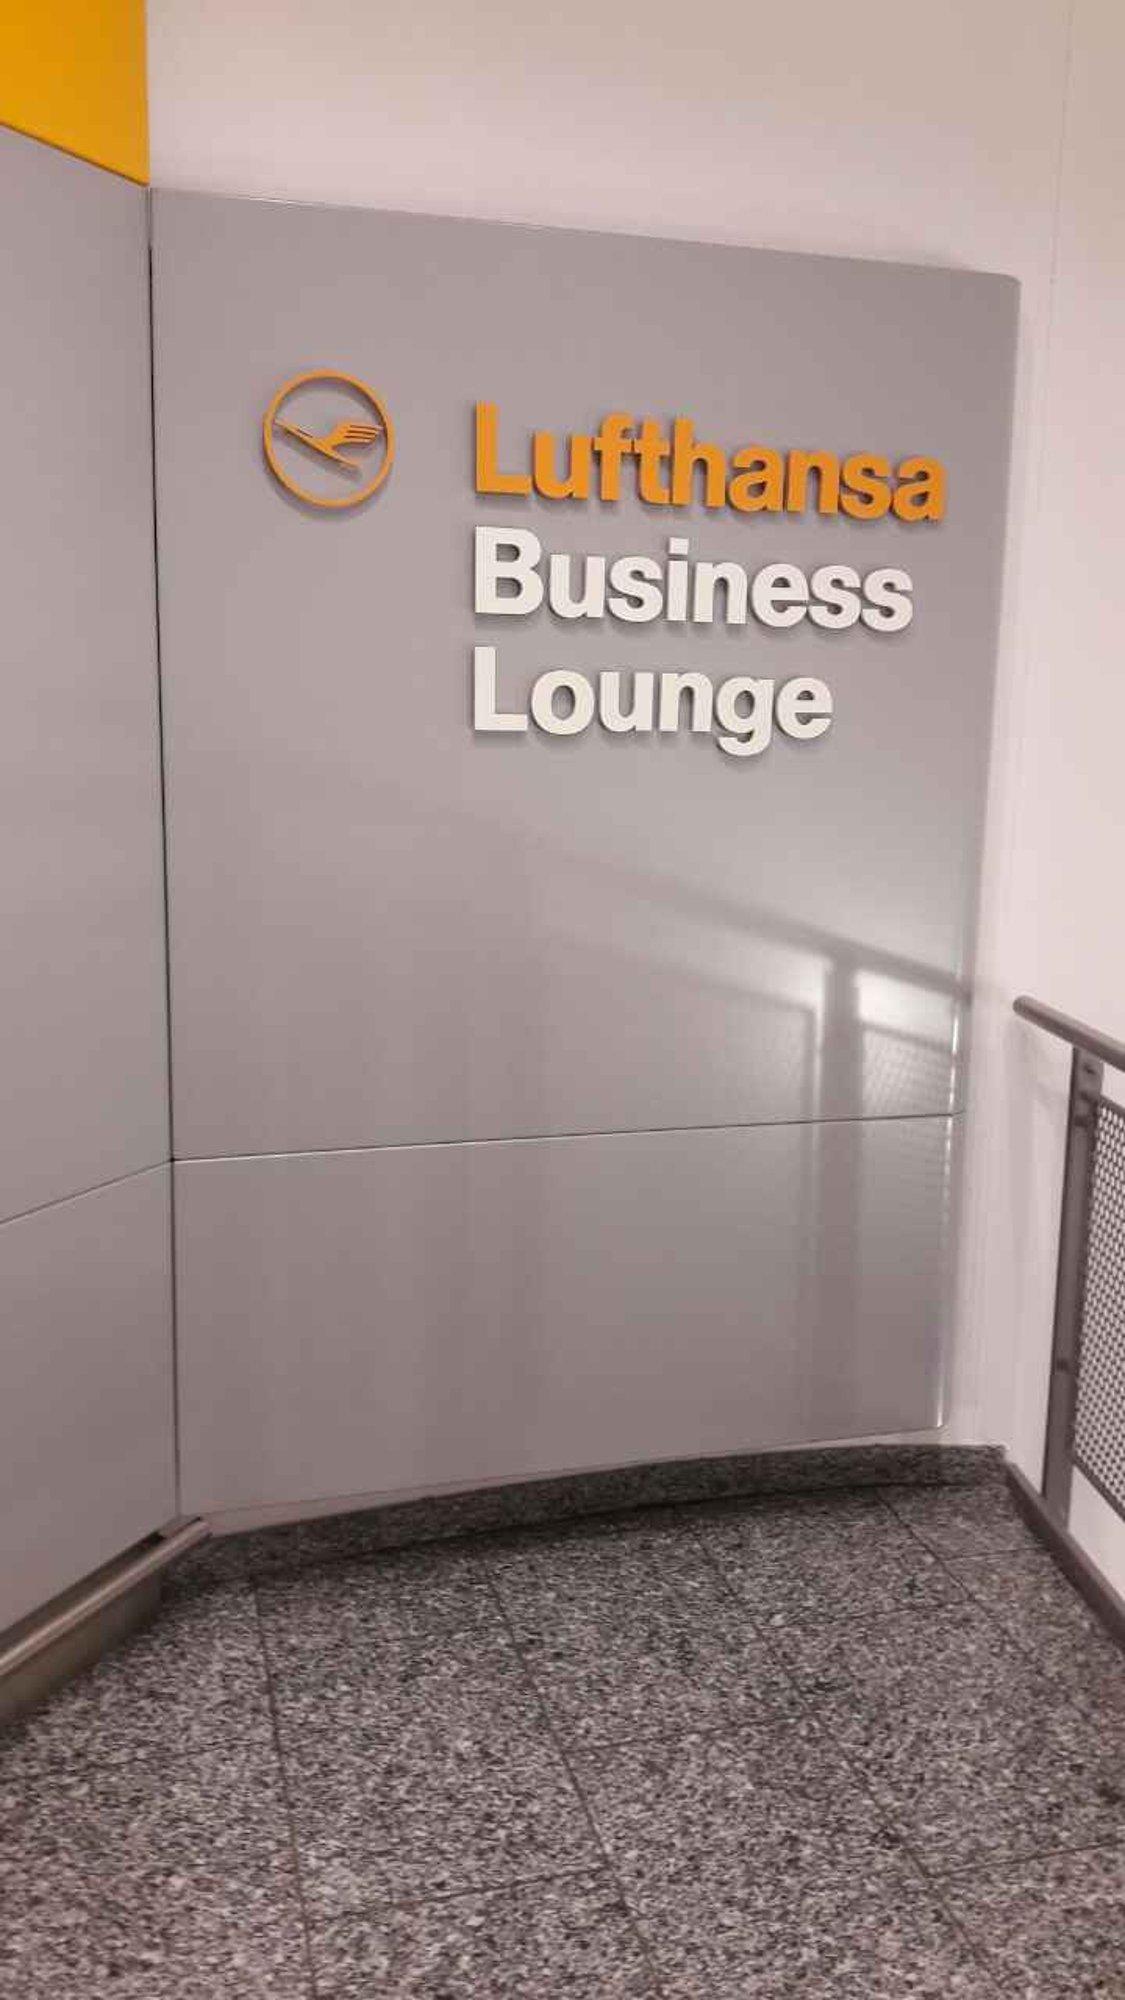 Lufthansa Business Lounge (Non-Schengen, Gates B44-B48) image 14 of 46